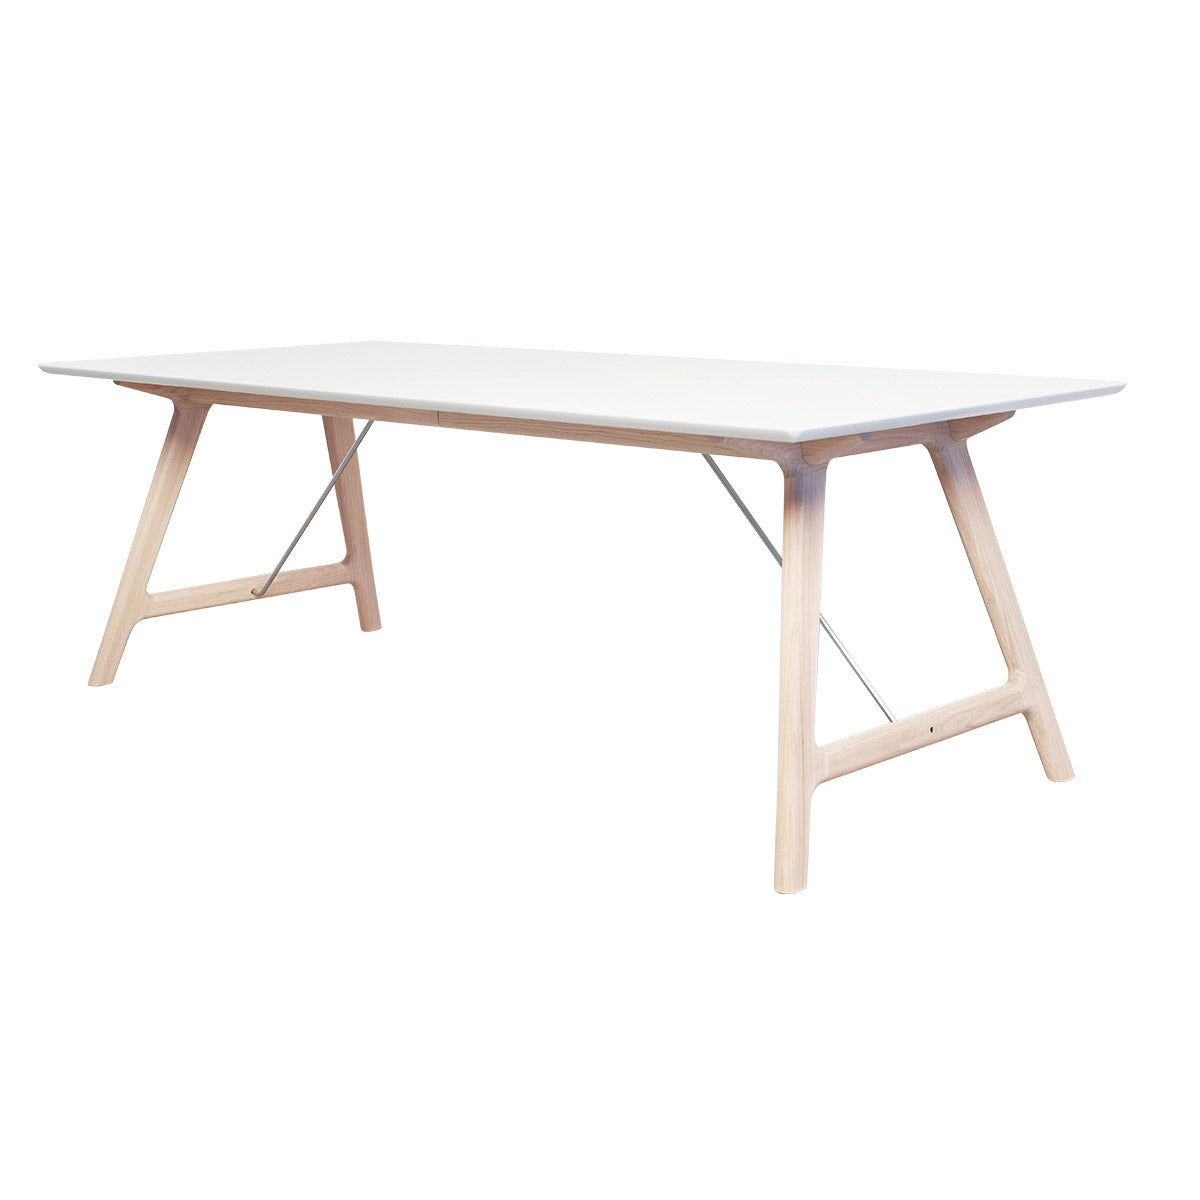 Andersen Furniture T7 udtræksbord i hvid laminat - understel i eg/sæbe - 95x170xH72,5 cm - DesignGaragen.dk.